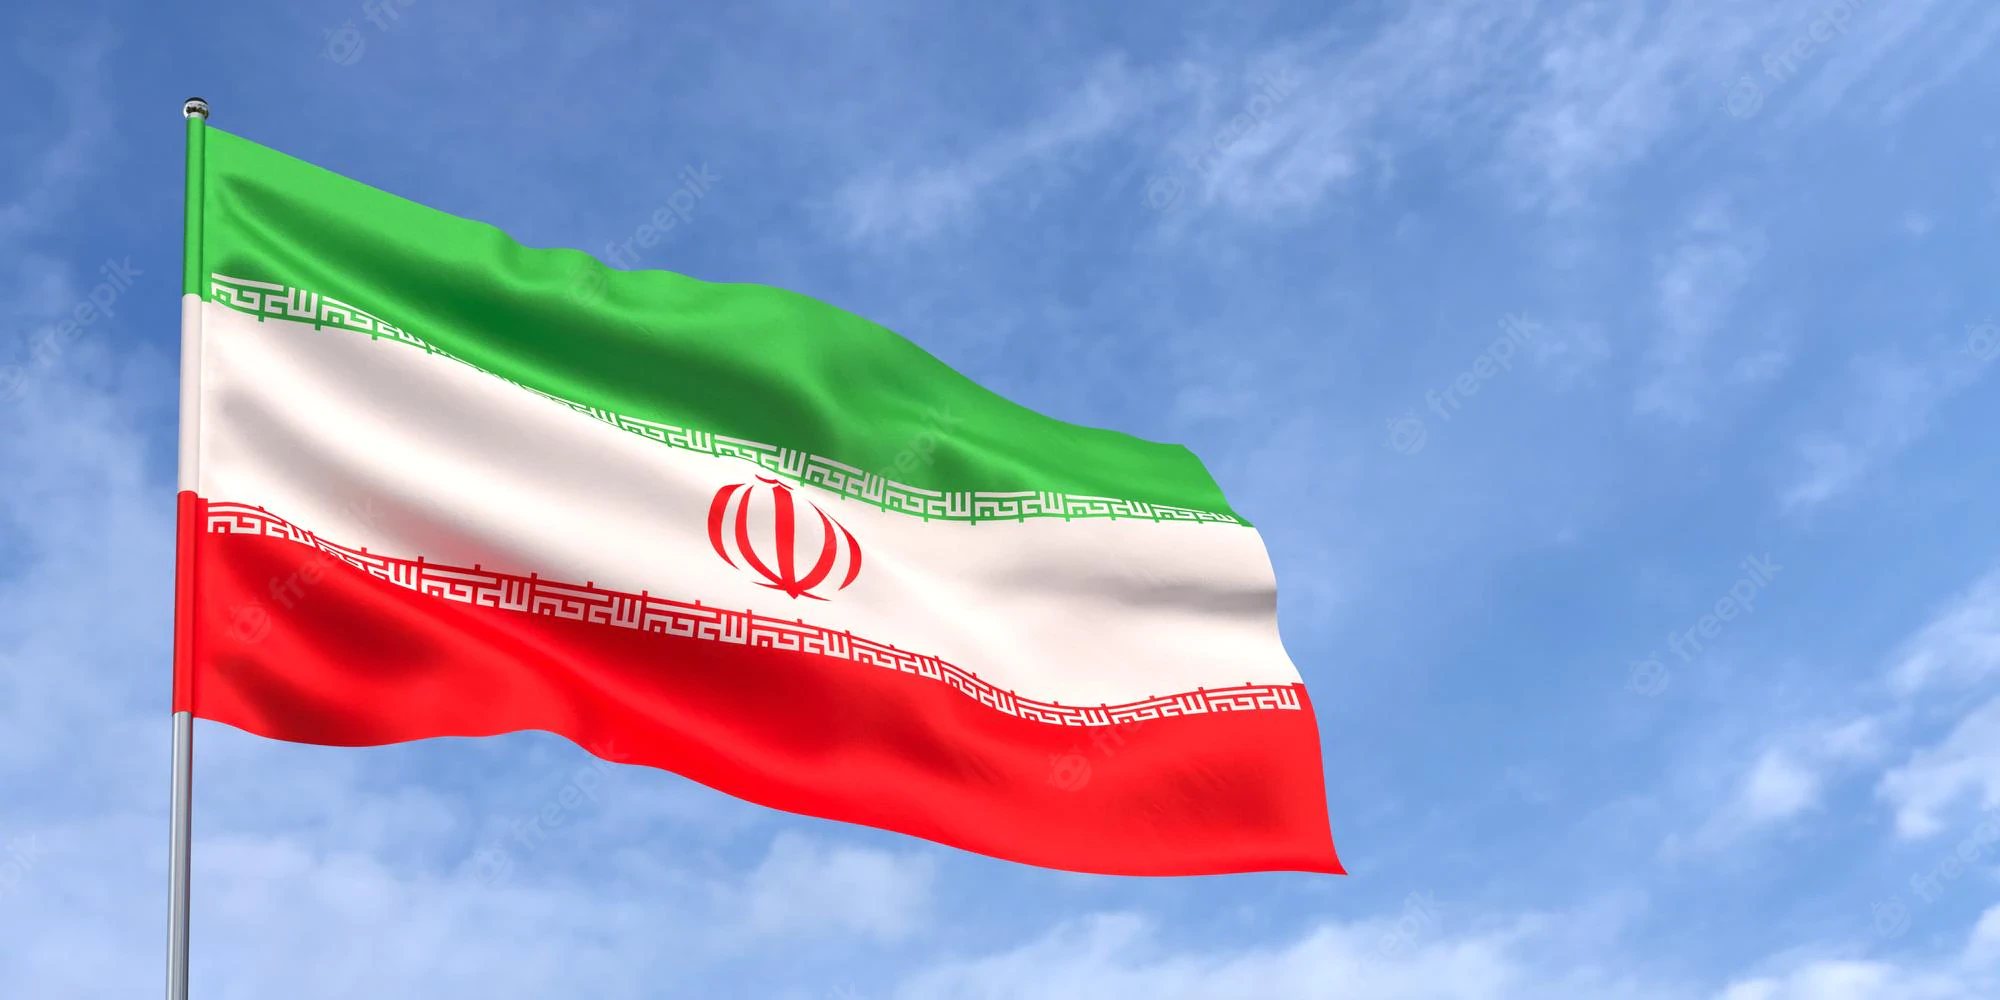 इरानद्वारा नयाँ हाइपरसोनिक मिसाइल सार्वजनिक